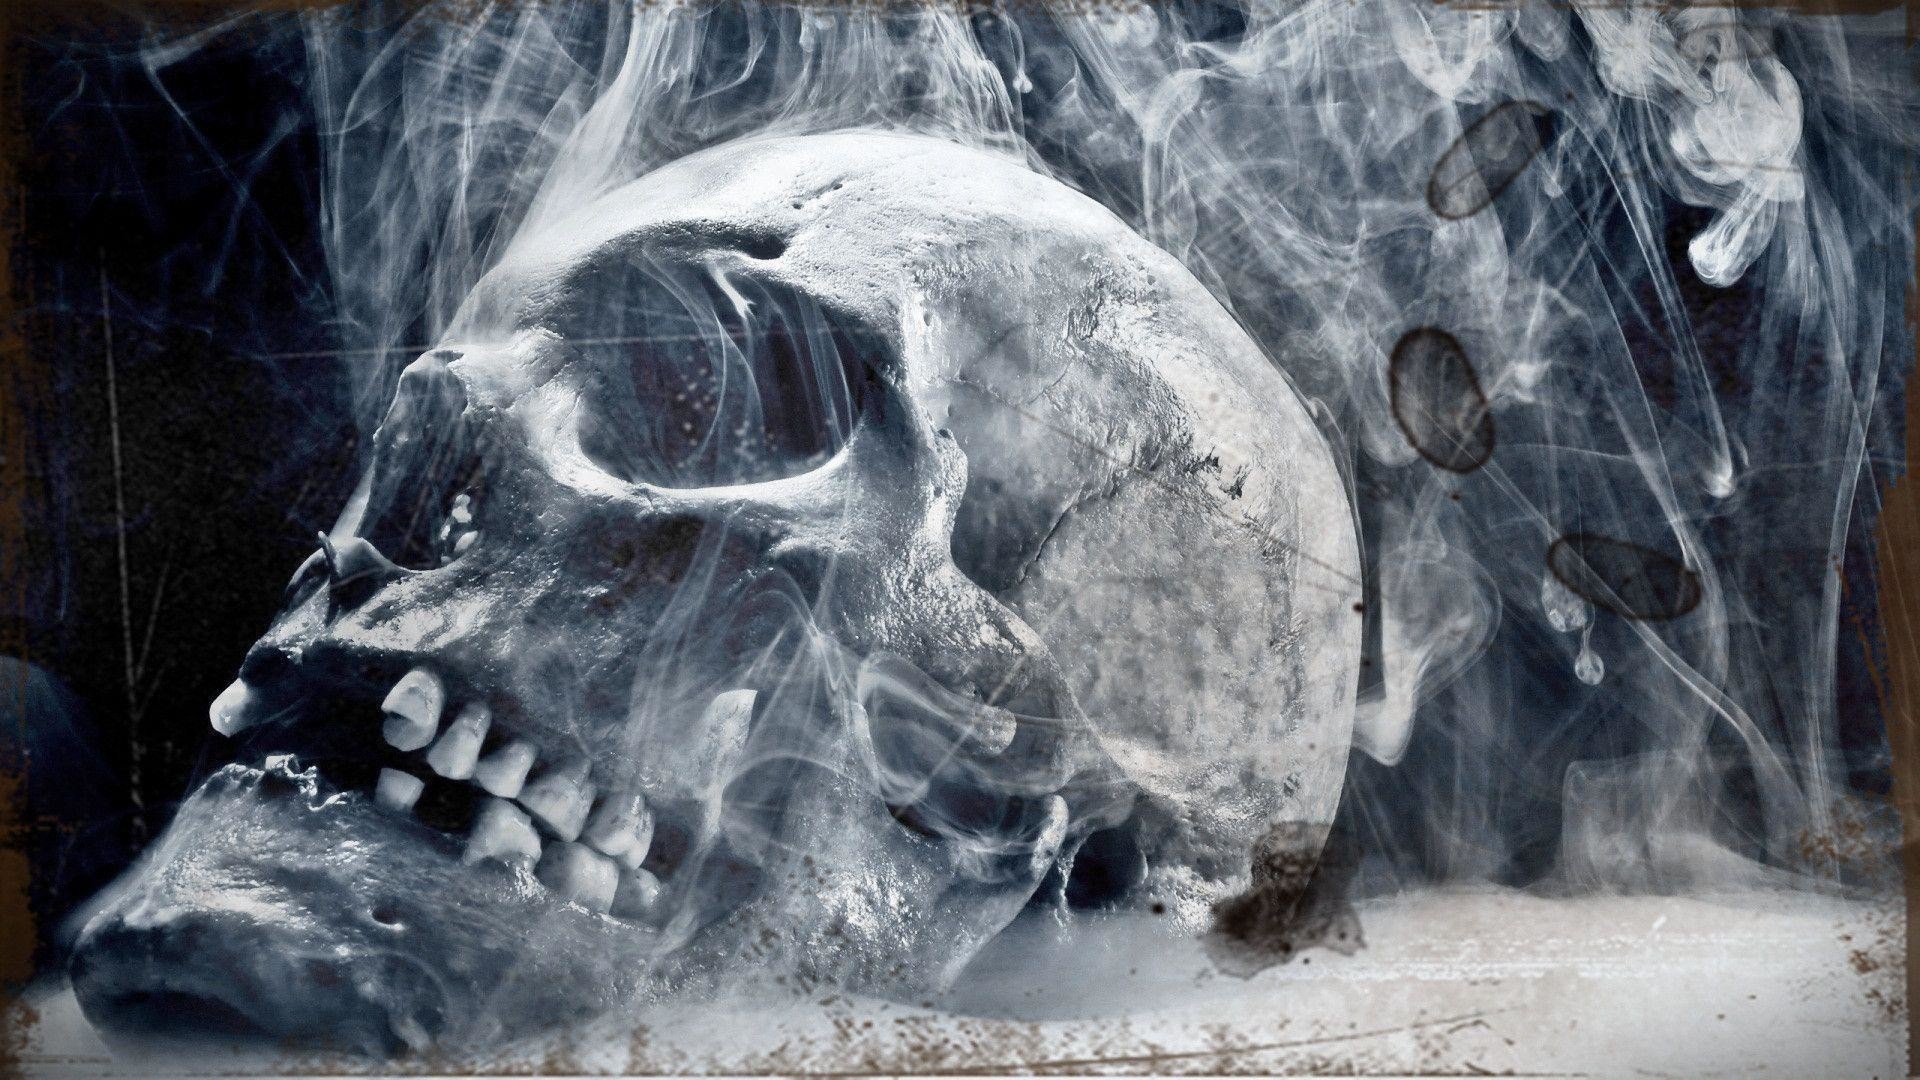 フルhd 3d壁紙1920x1080,頭蓋骨,骨,あご,ストックフォト,写真撮影